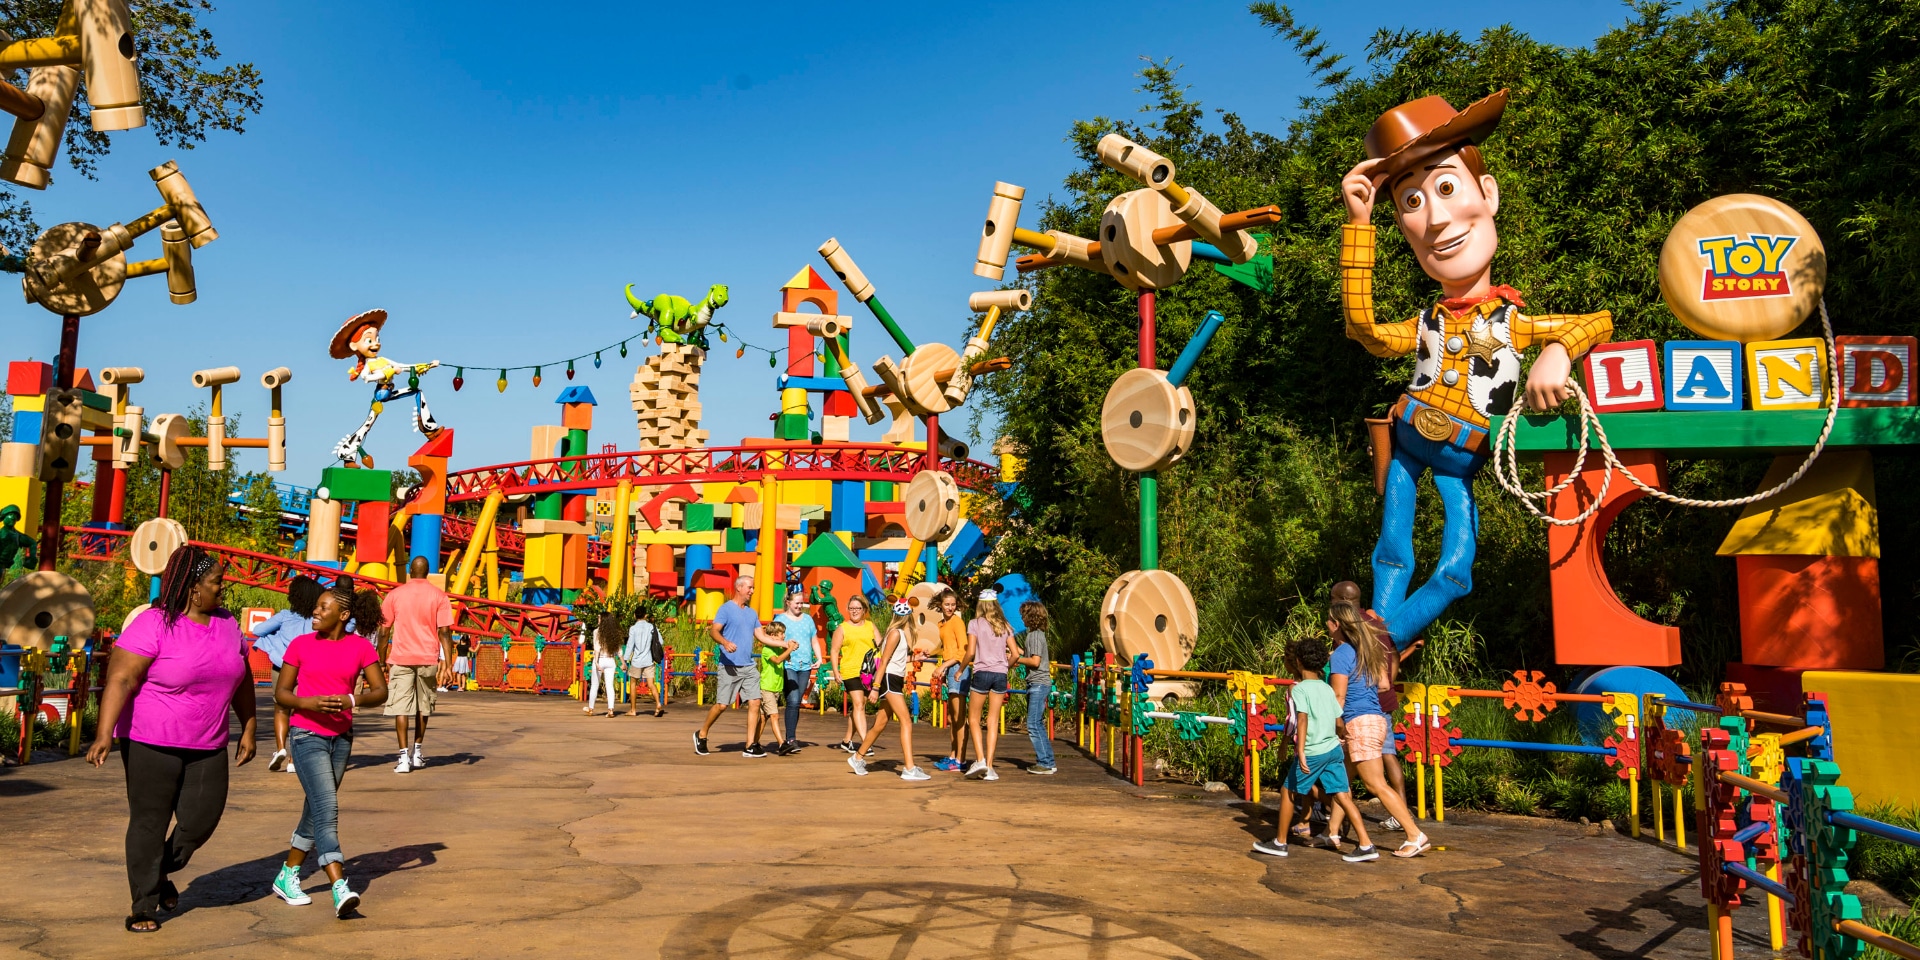 Explore Toy Story Land Orlando